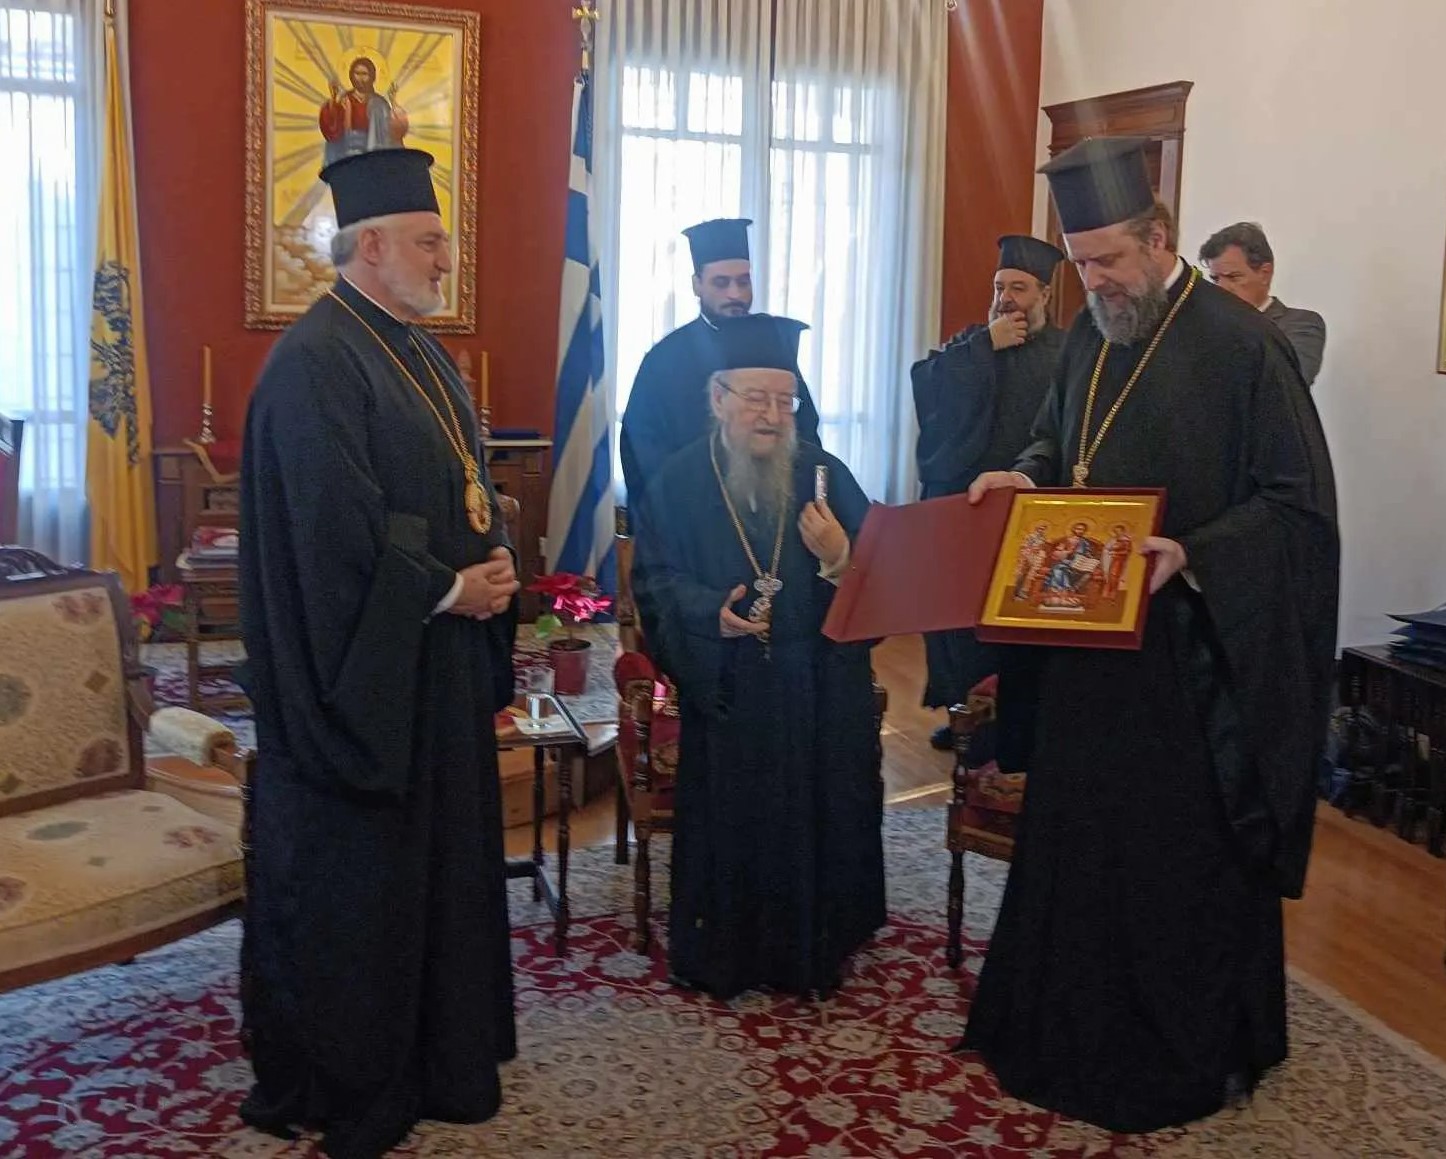 Θεσσαλονίκη: Επίσκεψη αρχιεπισκόπου Αμερικής Ελπιδοφόρου στη μητρόπολη Θεσσαλονίκης